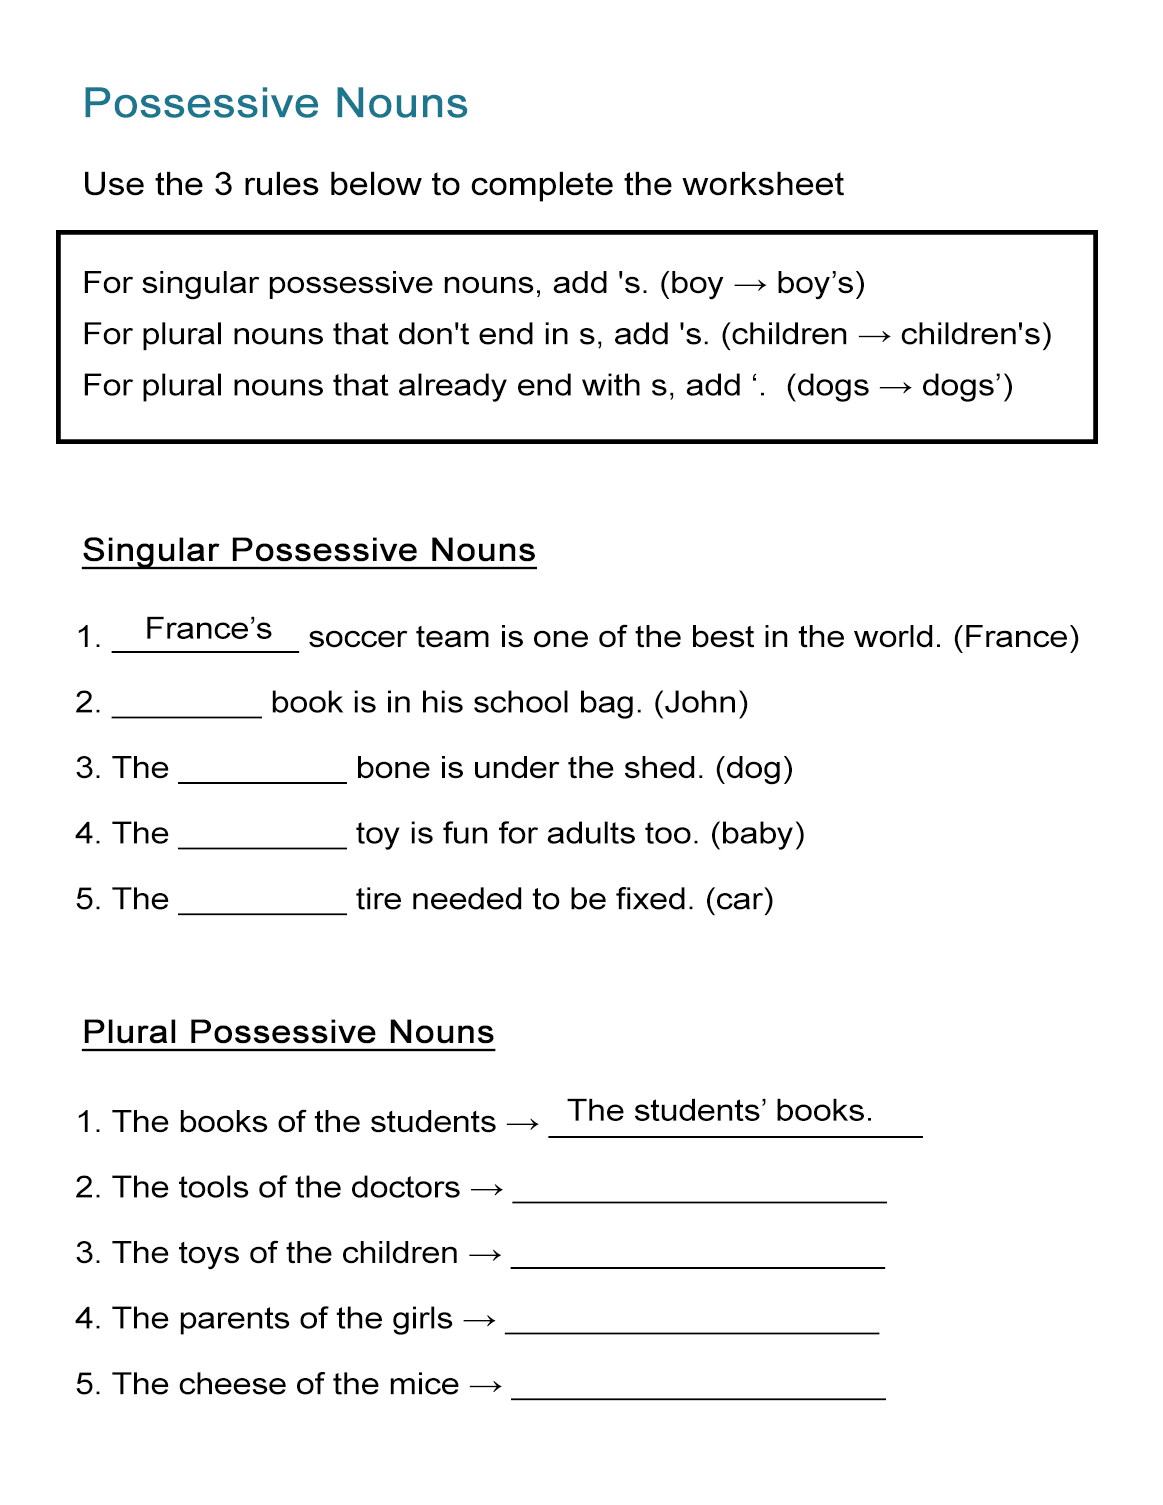 Singular Possessive Nouns Worksheet Educational Worksheet